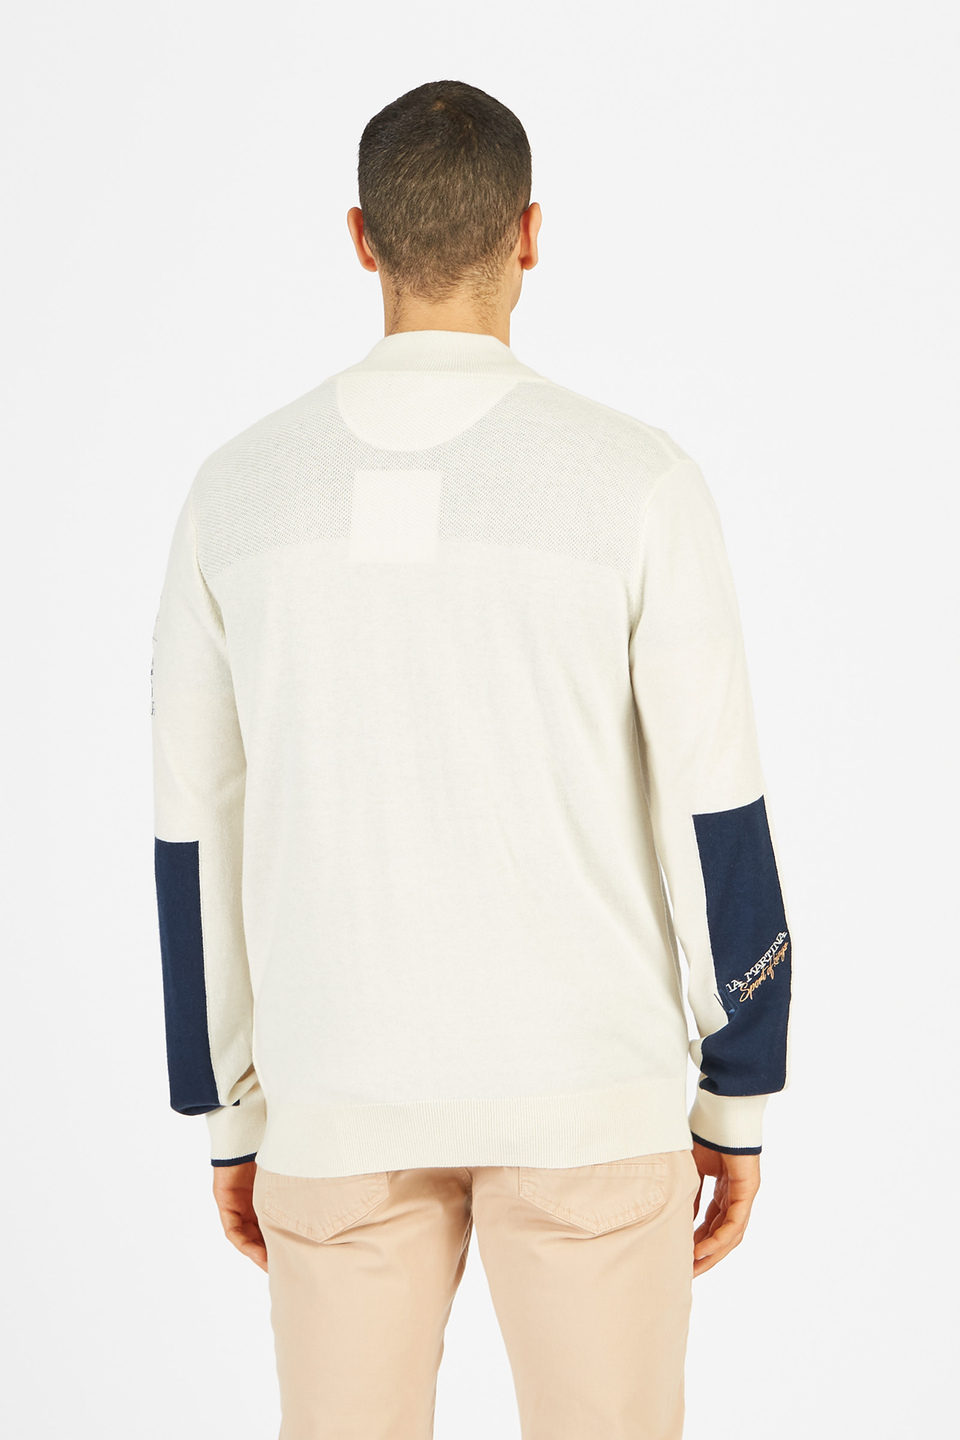 Maglia tricot da uomo a maniche lunghe in cotone misto lana con zip regular fit | La Martina - Official Online Shop